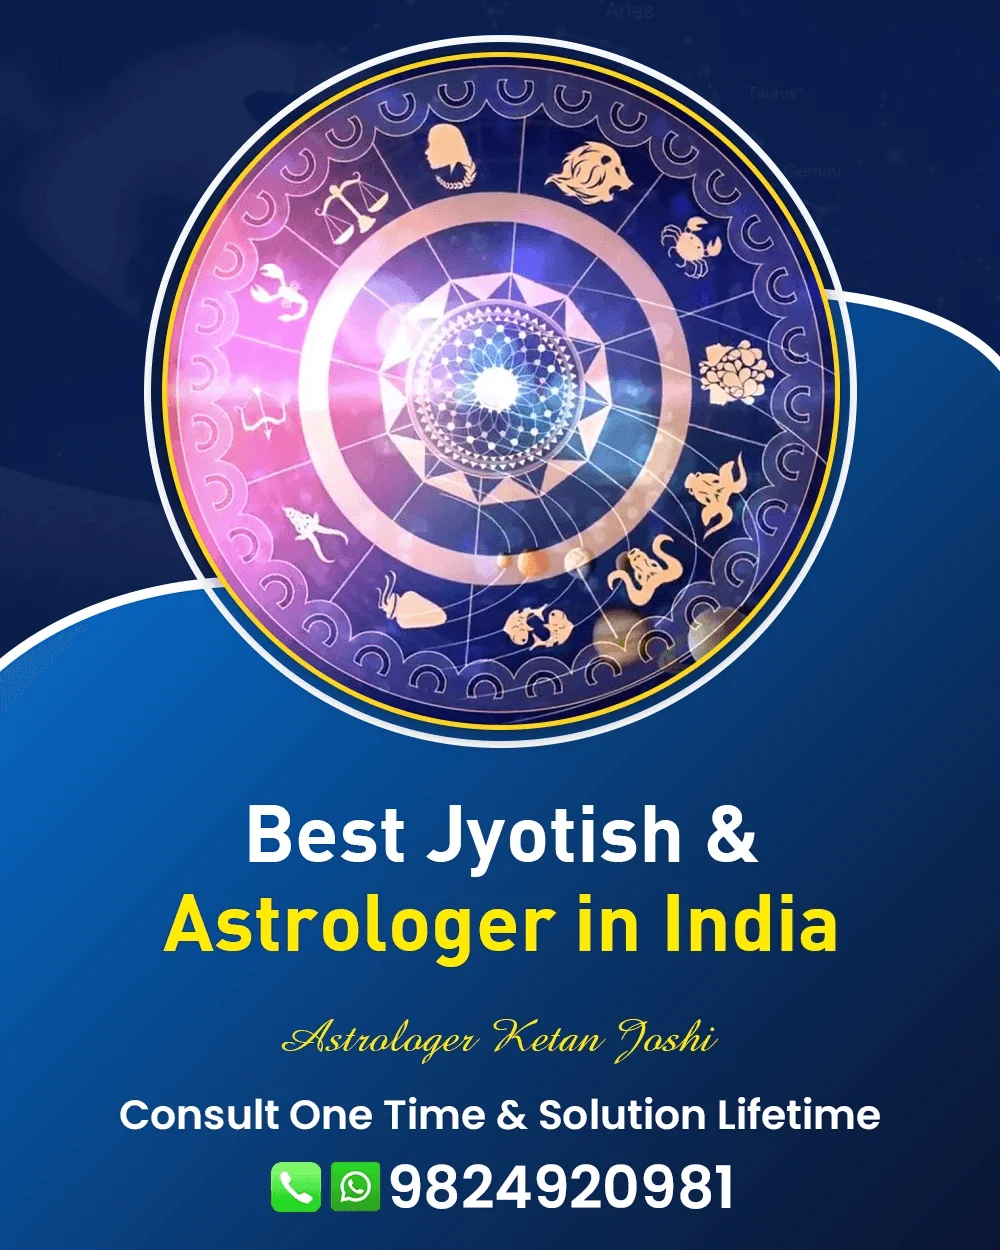 Best Astrologer In Mumbai